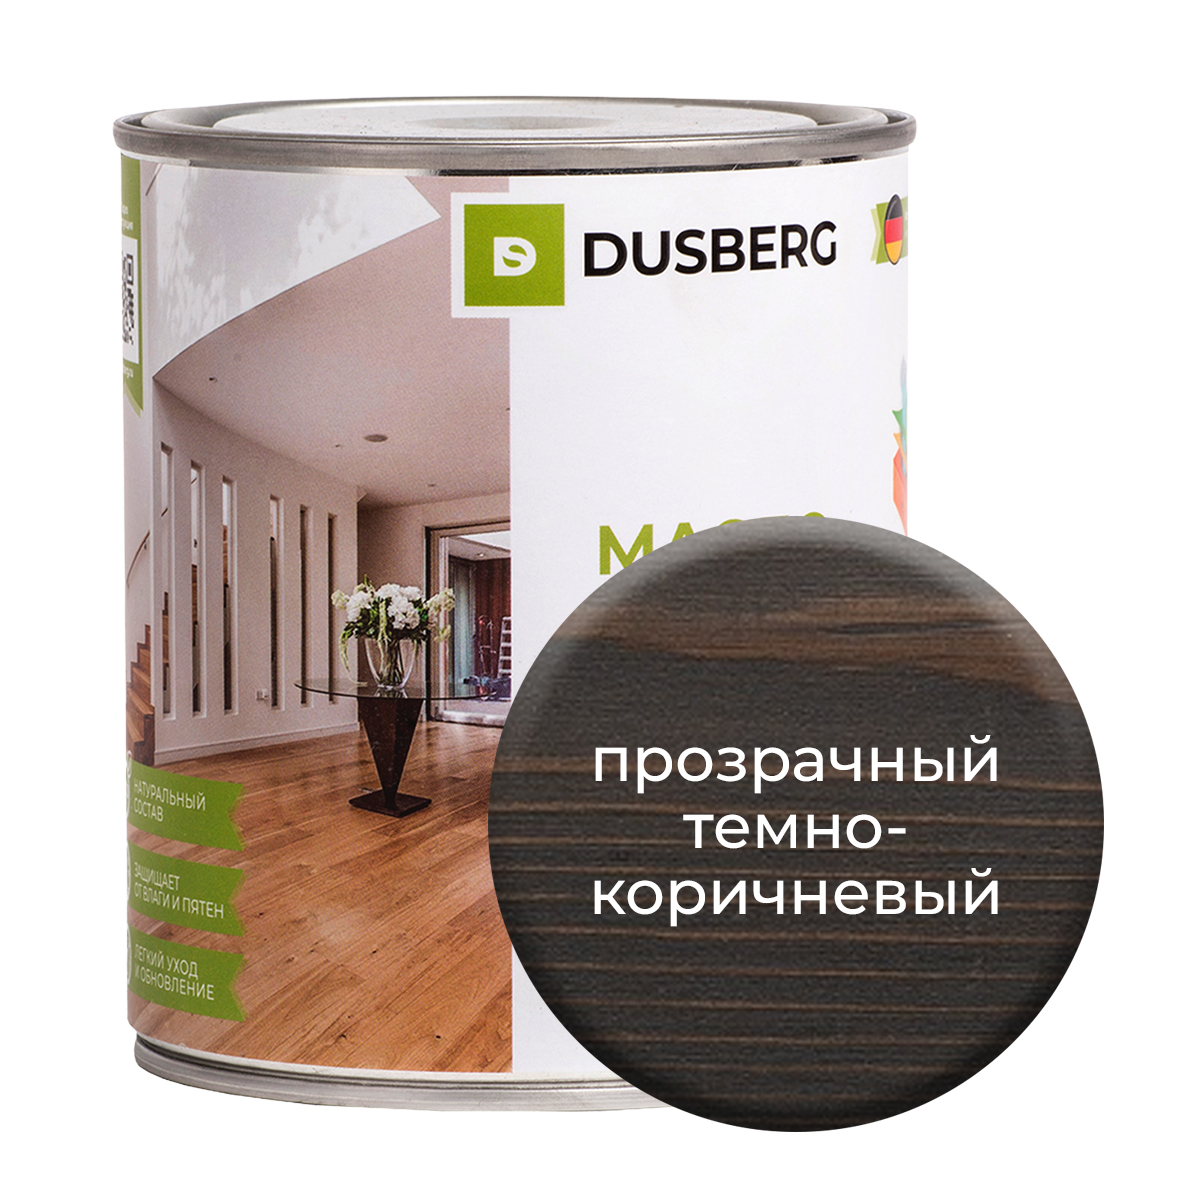 Масло Dusberg для стен на бесцветной основе, 750 мл Прозрачный темно-коричневый масло dusberg для дерева на бесцветной основе 750 мл светло коричневый